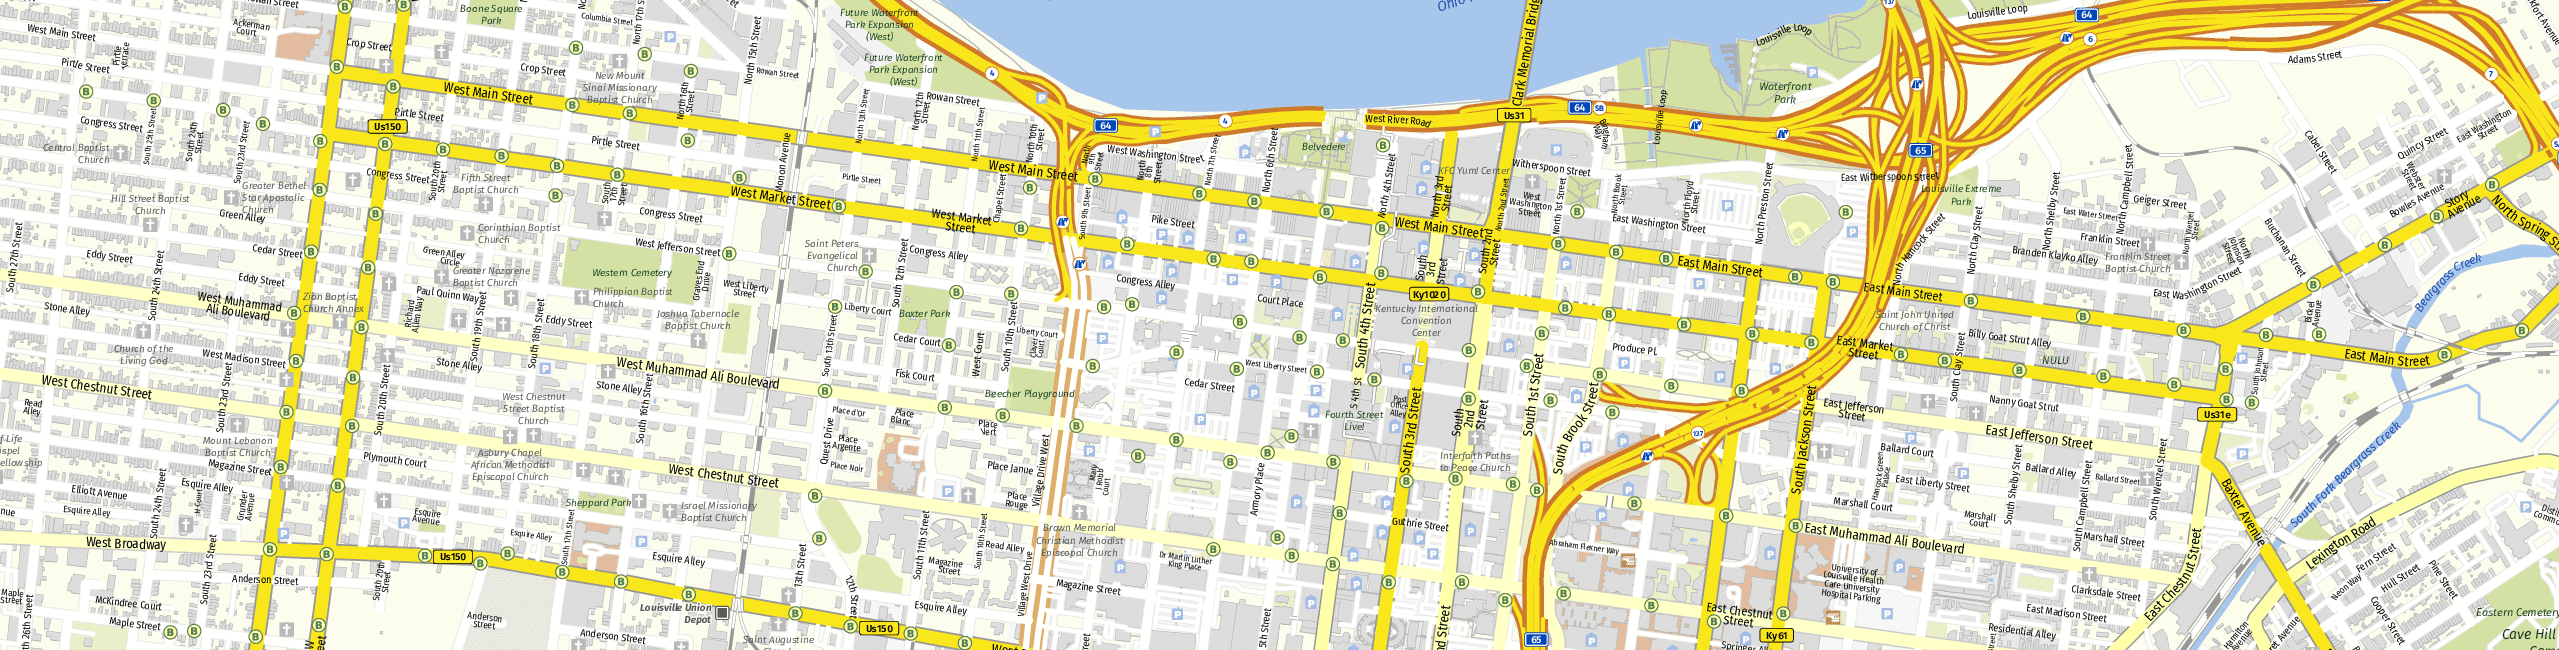 Stadtplan Louisville zum Downloaden.